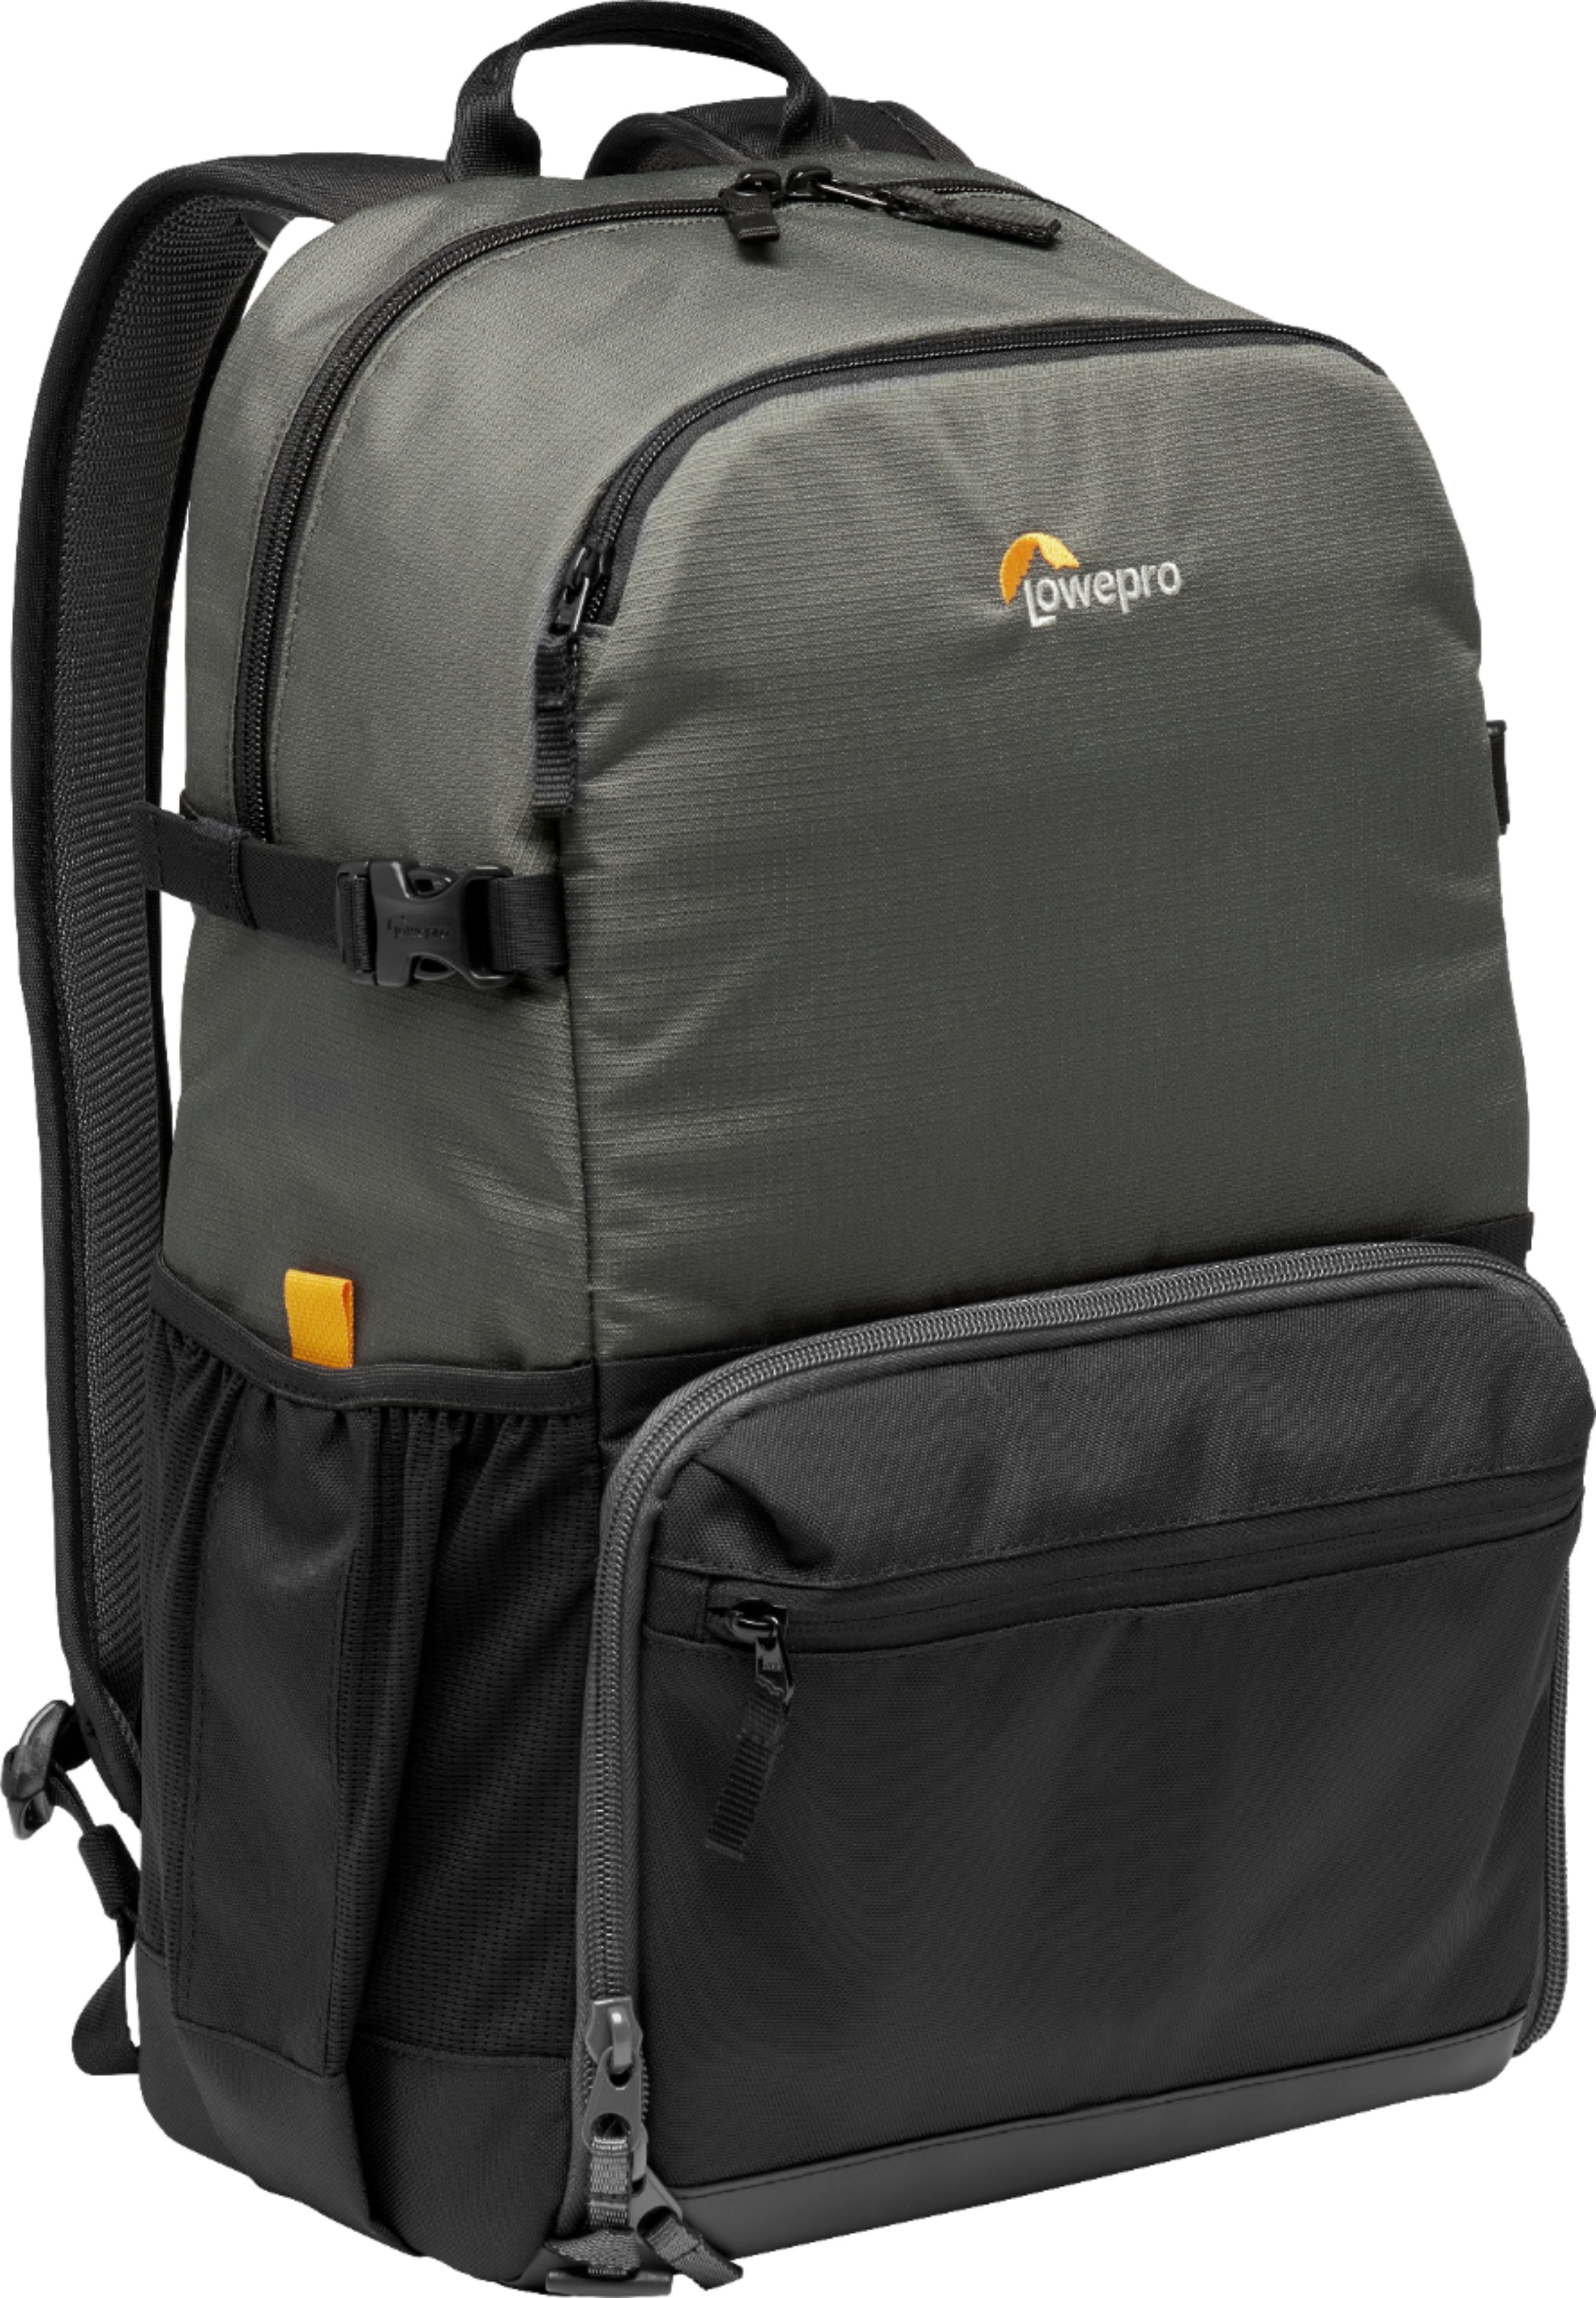 Lowepro - Truckee BP 250 Camera Backpack - Black